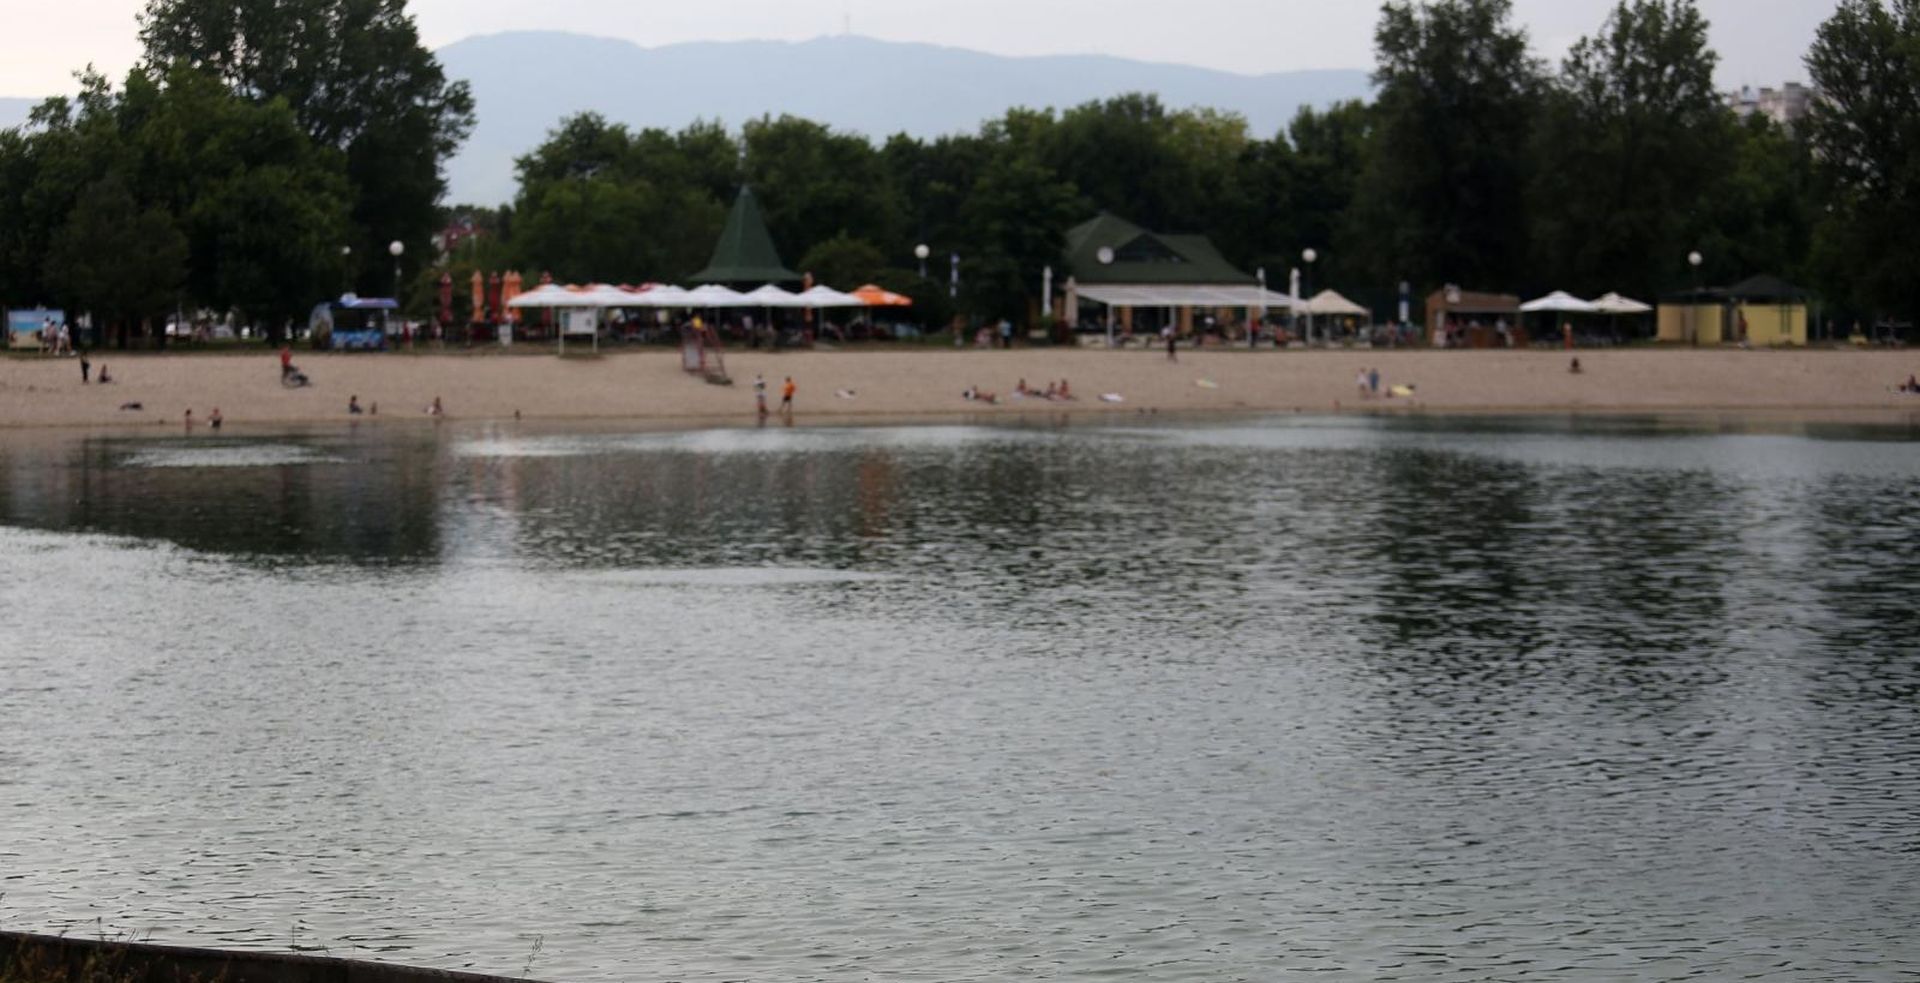 21.07.2019., Zagreb - Na jezeru jarun jedan kupac se utopio. Policijski ocevid je u tijeku. 
Photo: Marin Tironi/PIXSELL